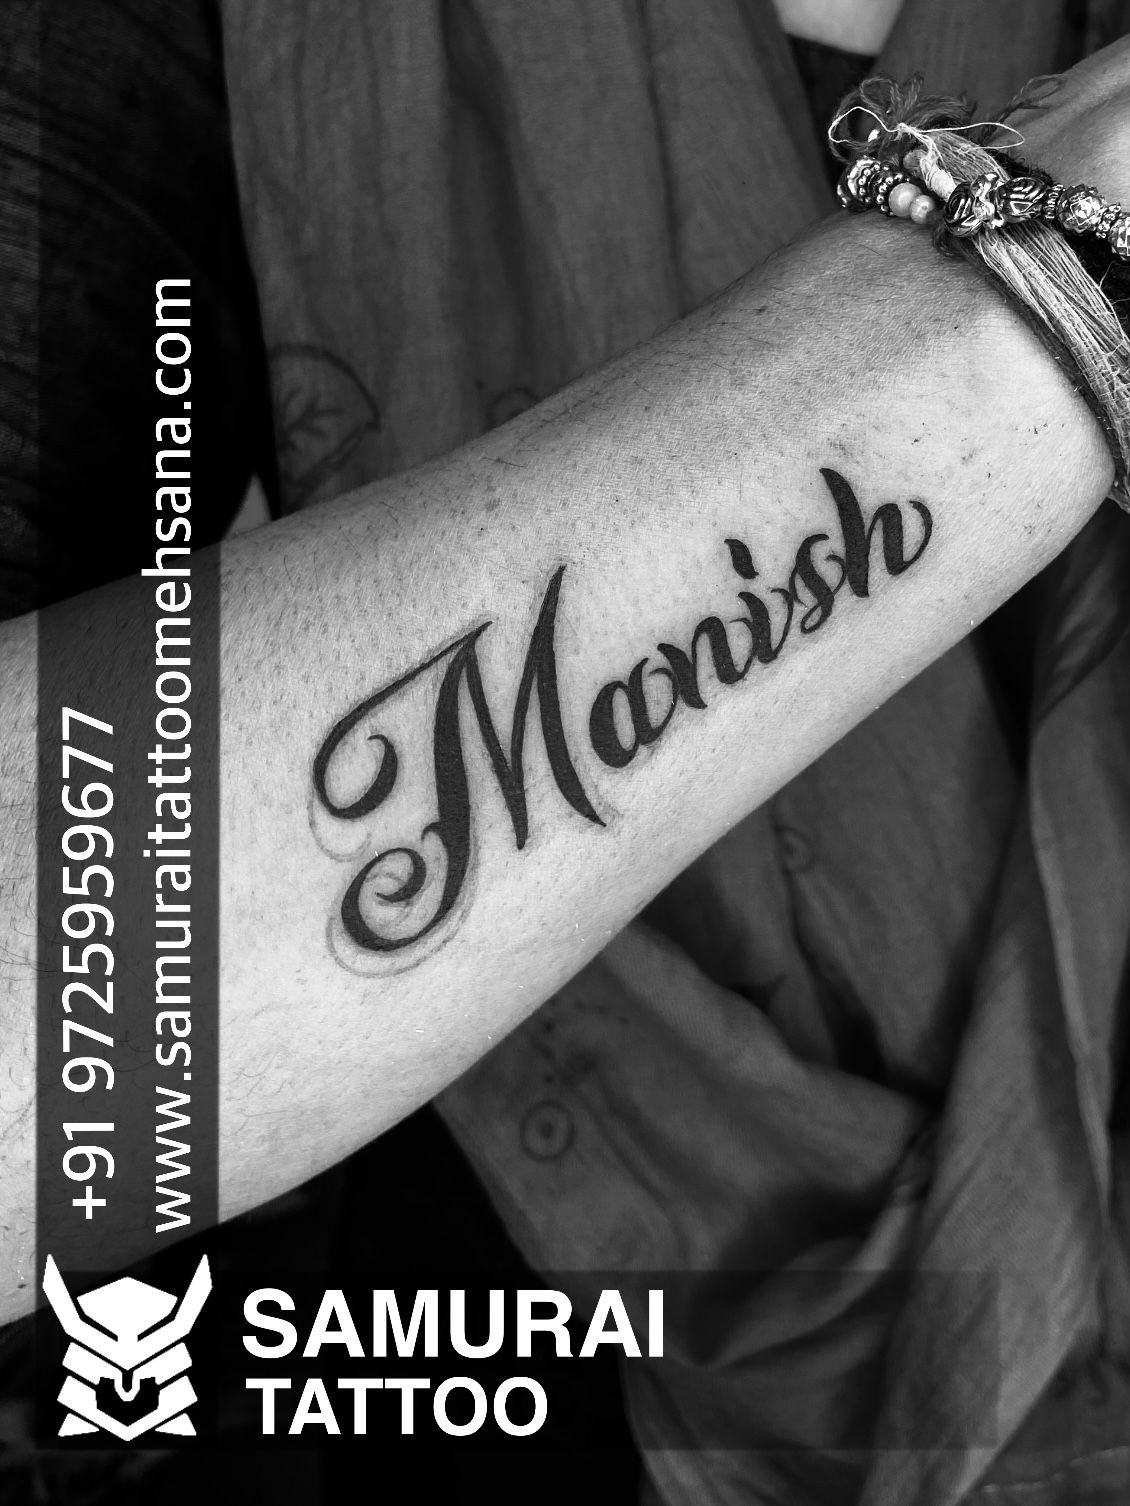 Amazing Tattoo || Manish name tattoo design || beautiful tattoo ideas ||  styles name tattoo designs - YouTube